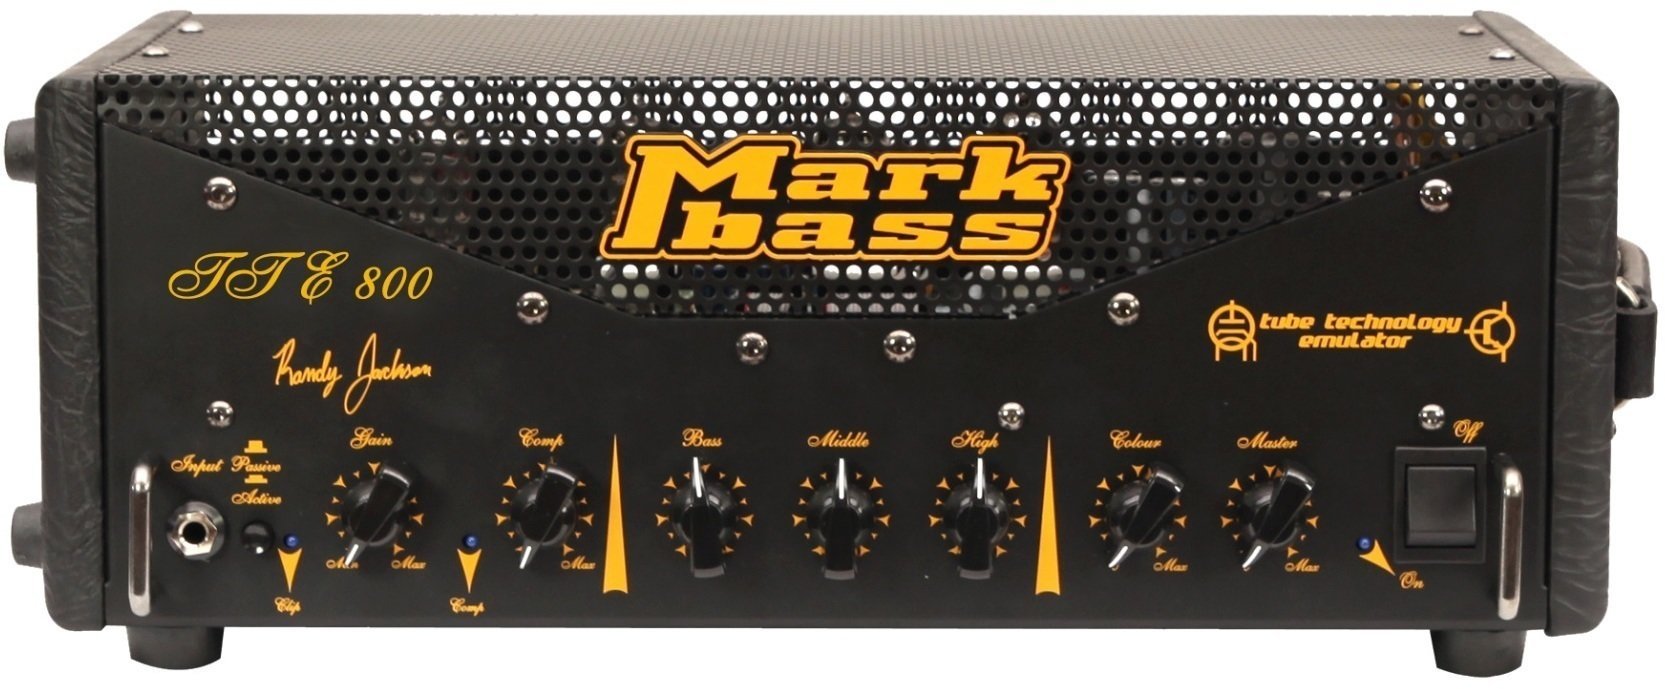 Hybrid Bass Amplifier Markbass TTE 800 Randy Jackson Signature